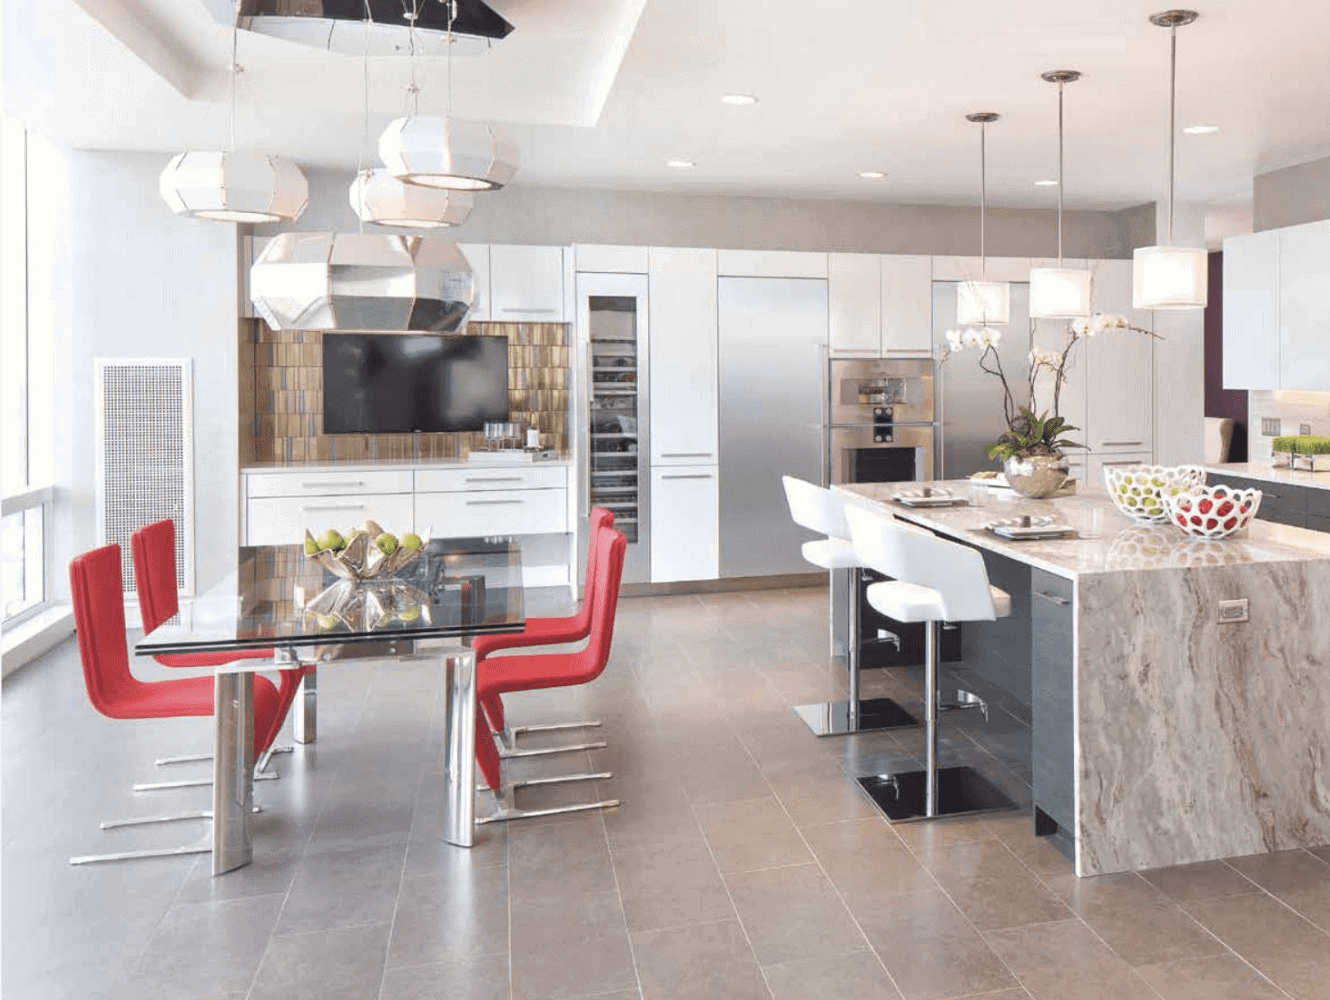 Contemporary European-style kitchen, designed by Bilotta senior designer Jeff Eakley